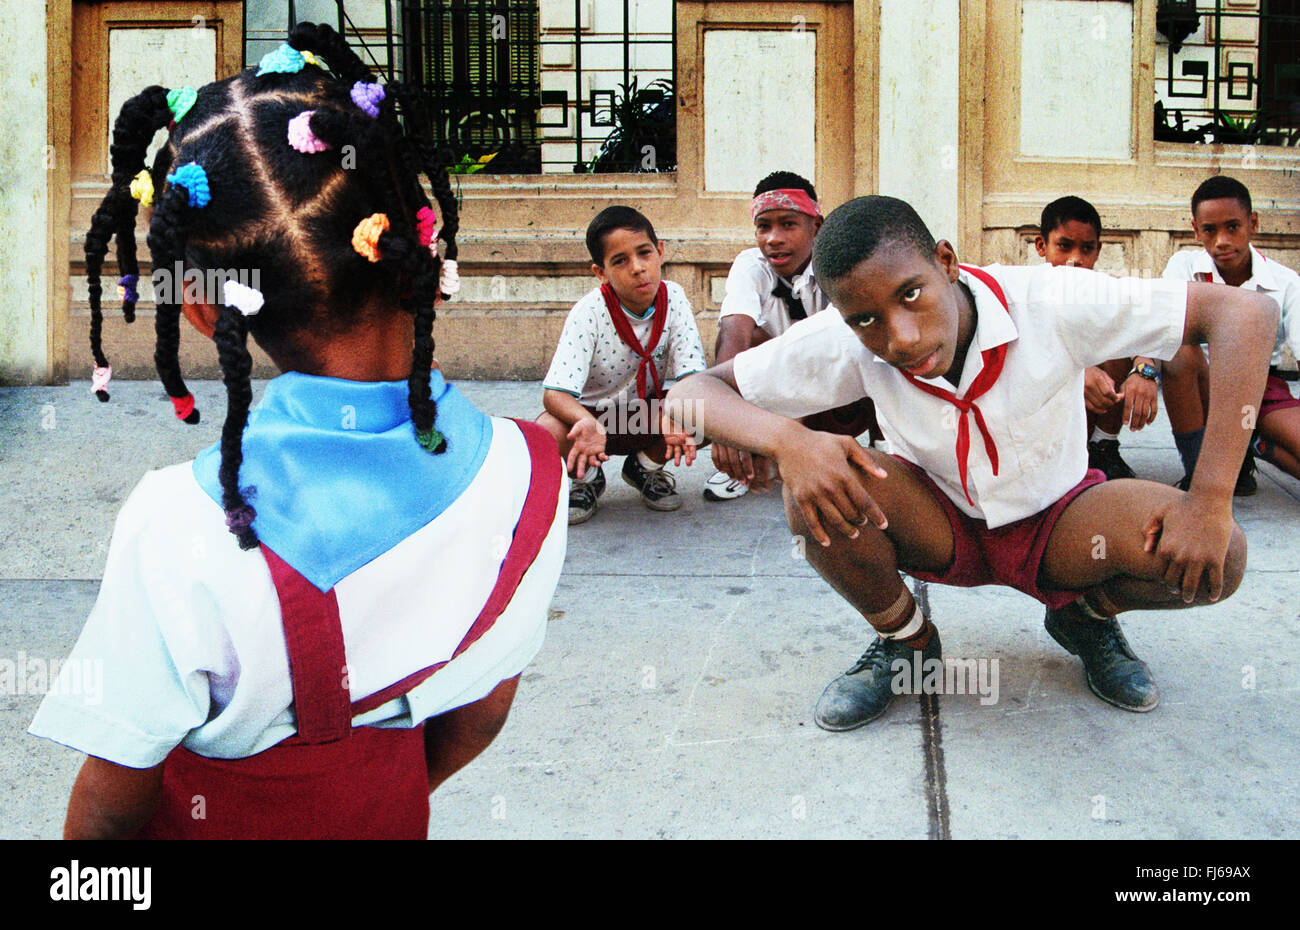 Gli alunni cubani che indossano uniformi scolastiche, accovacciato., Cuba Foto Stock